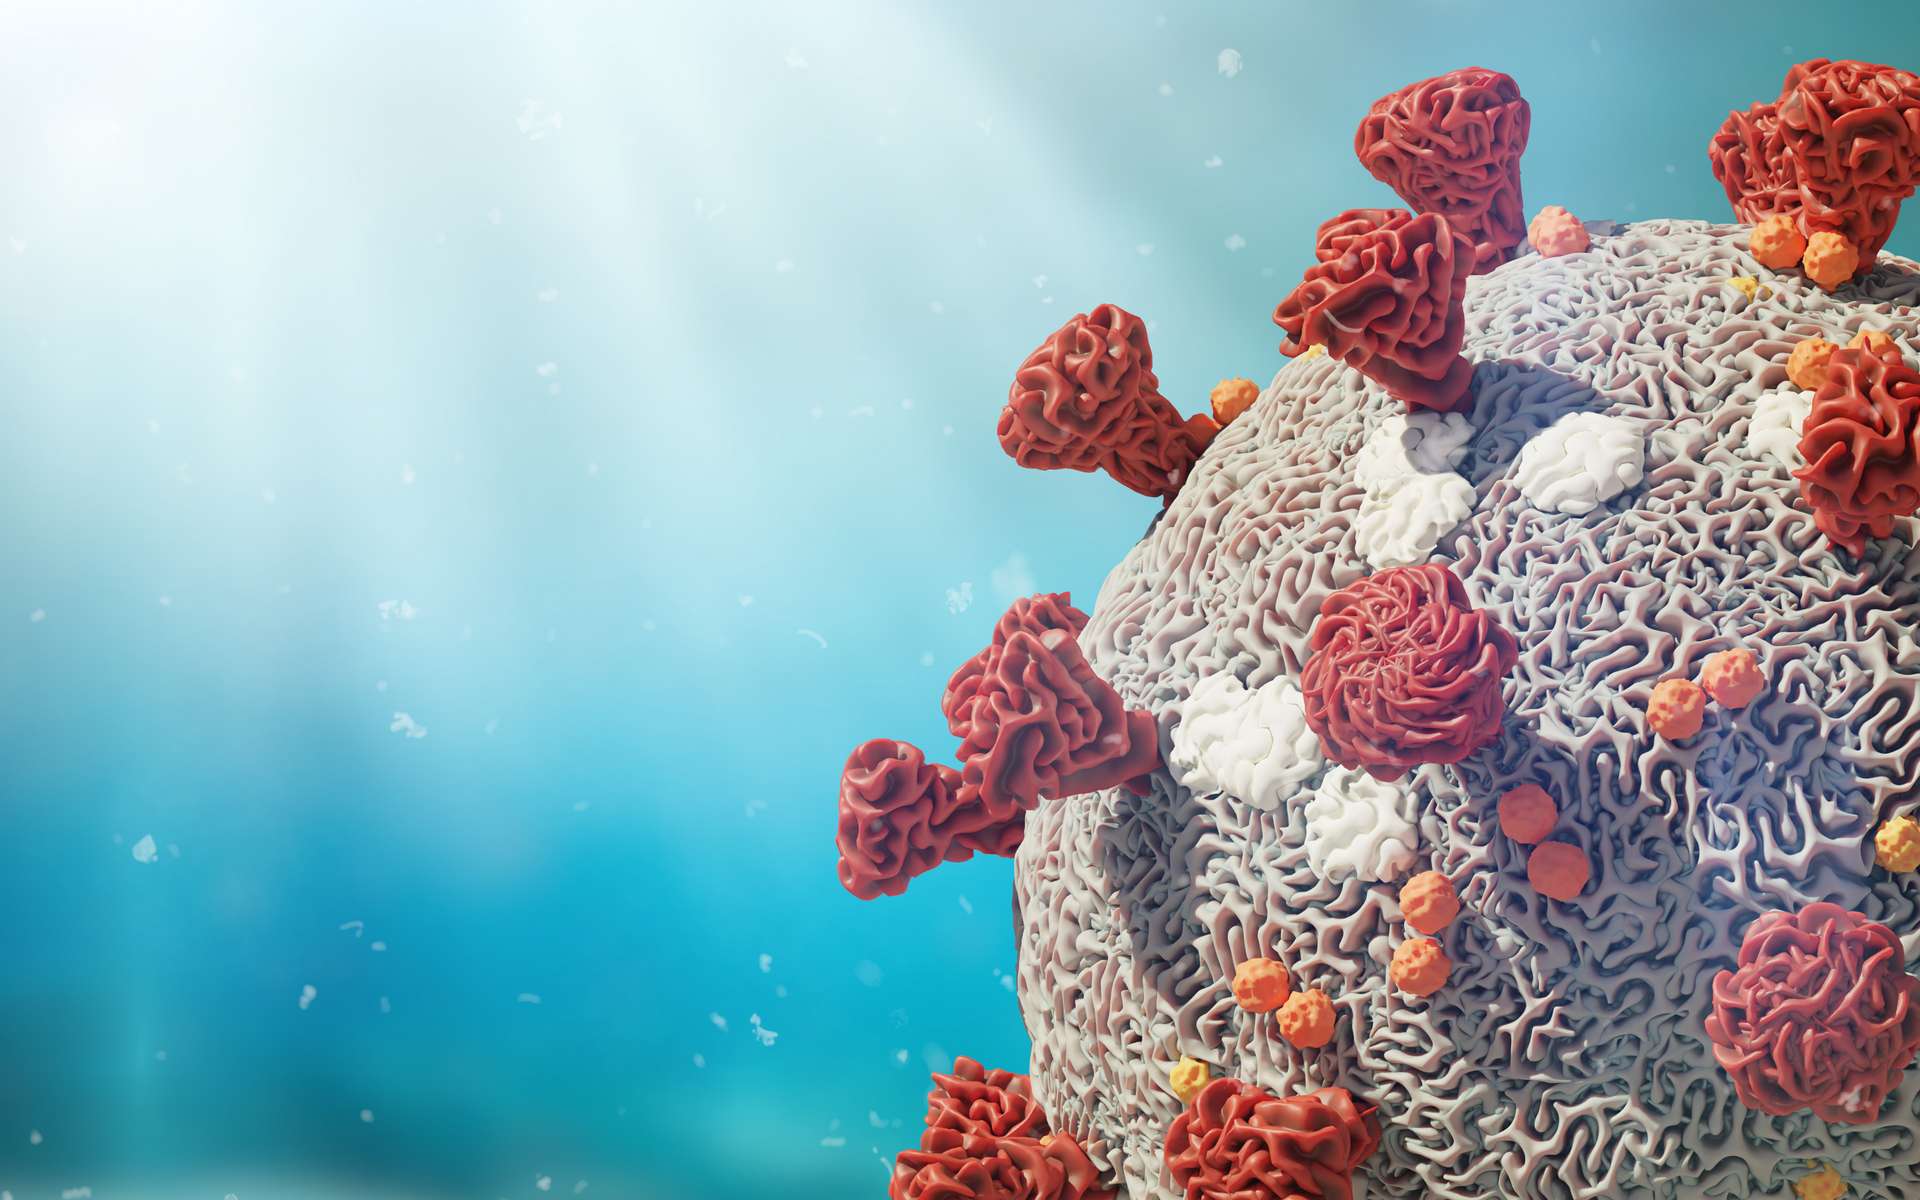 La polymérase virale pourrait être un antigène présent dans les vaccins. © dottedyteti, Adobe Stock